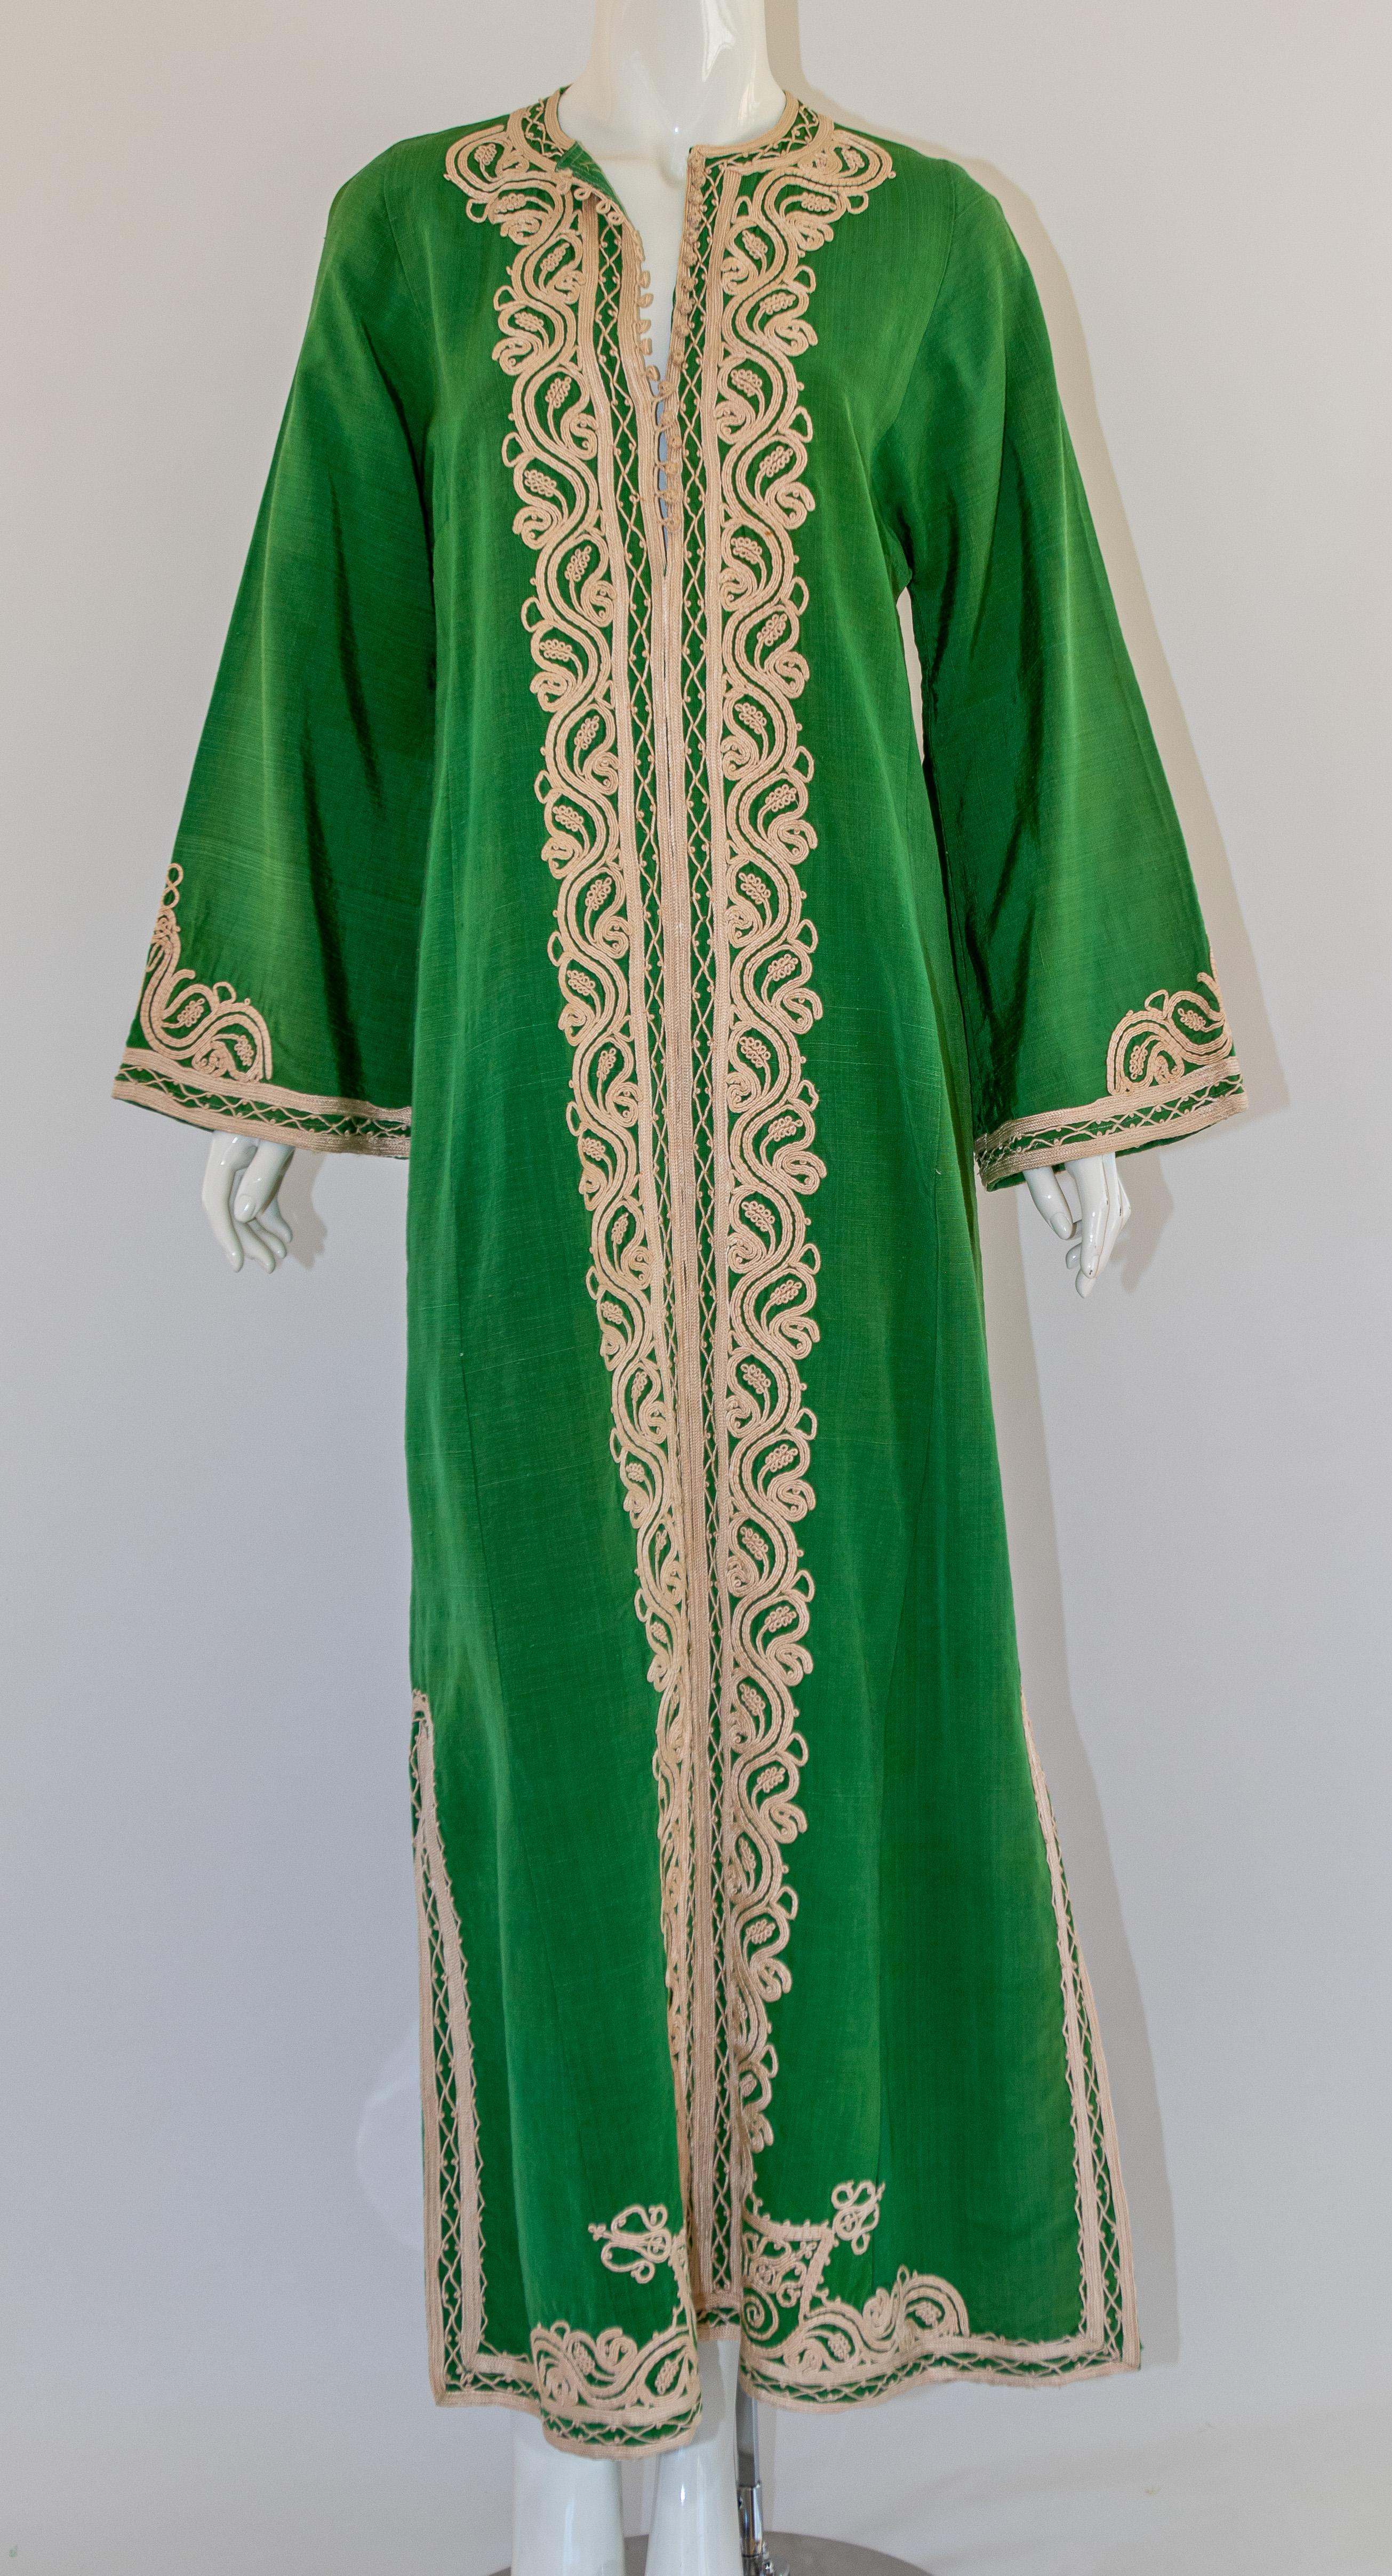 Marokkanischer Kaftan aus grüner Baumwolle im Vintage-Stil, bestickt mit weißen Fäden.  
Der Kaftan hat einen traditionellen Ausschnitt mit Seitenschlitzen und sanft geriffelten, verzierten Ärmeln. 
Sie wird an der Vorderseite mit geflochtenen